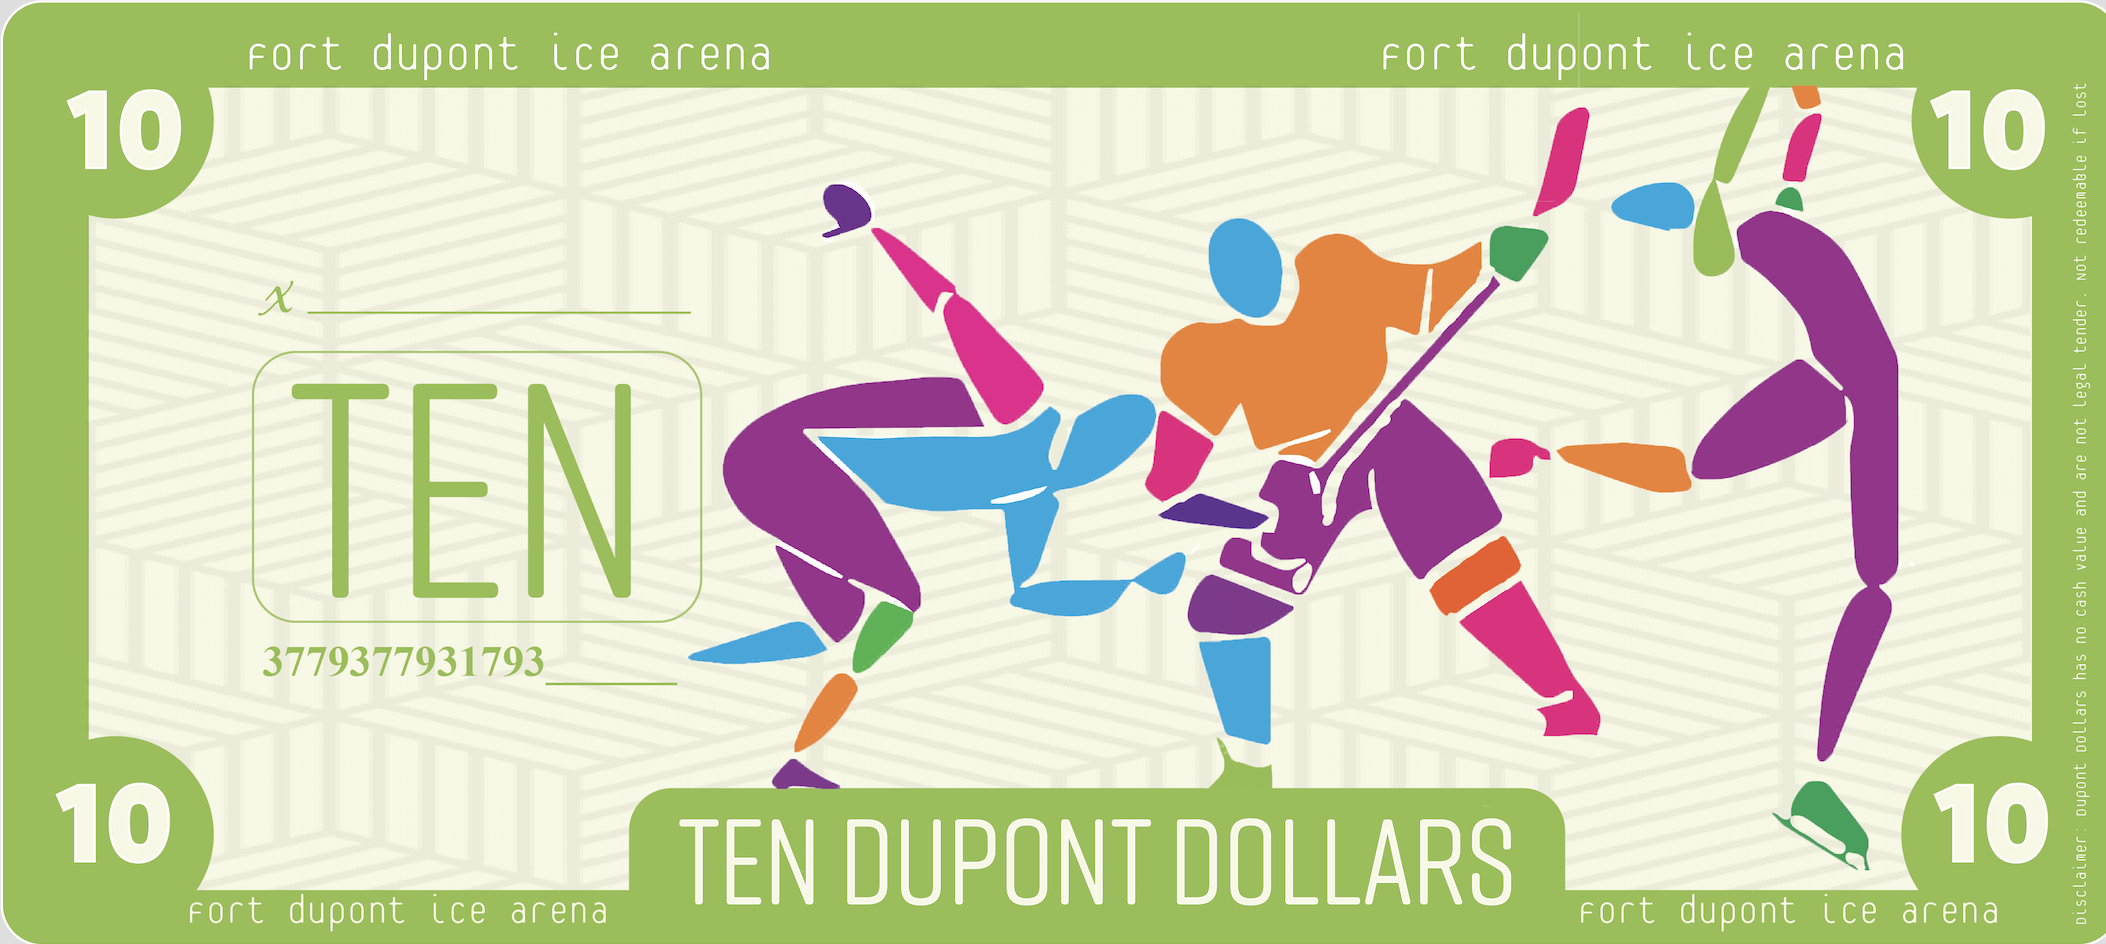 FDIA Dupont Dollars _ Ten